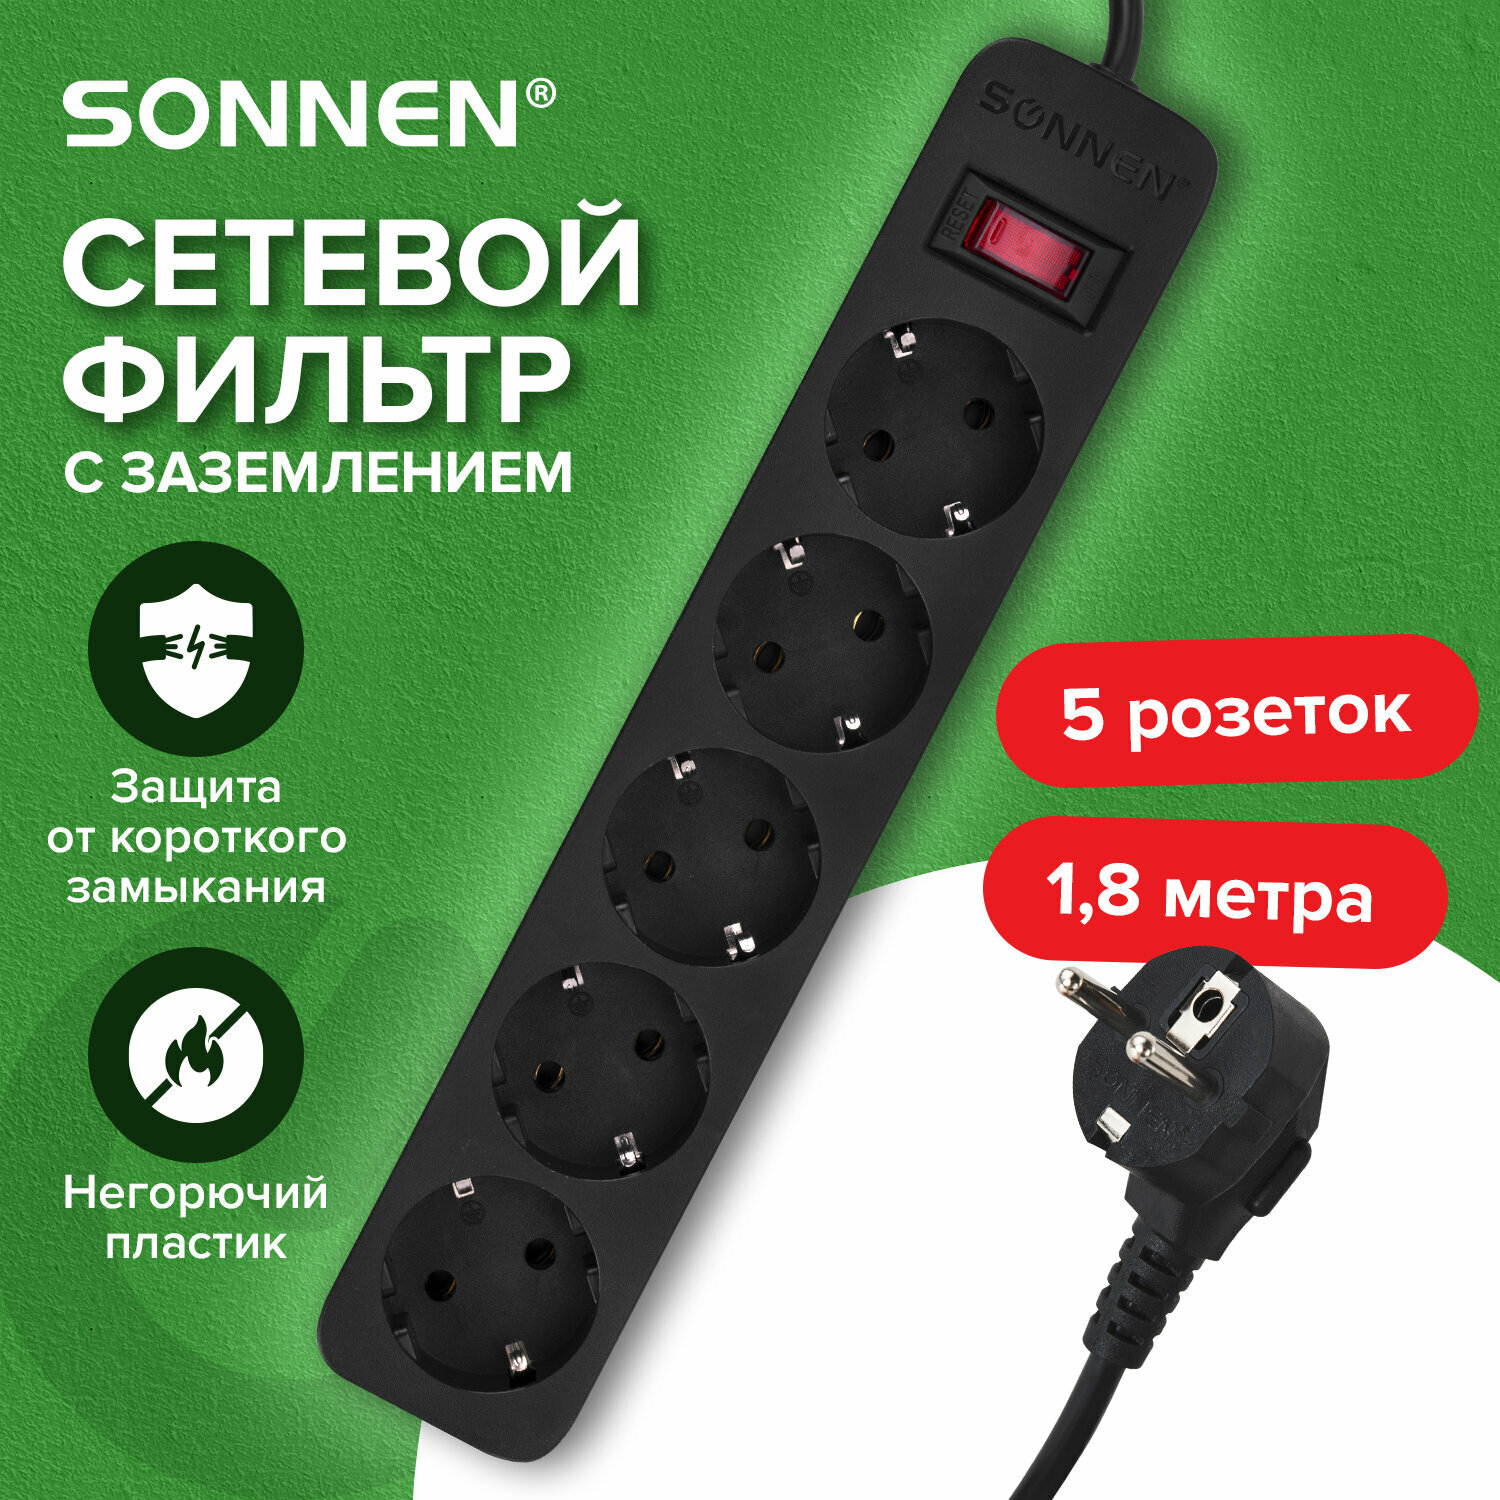 Сетевой фильтр SONNEN SPB-185, 5 розеток с заземлением, выключатель, 10 А, 1,8 м, черный, 513656 упаковка 2 шт.